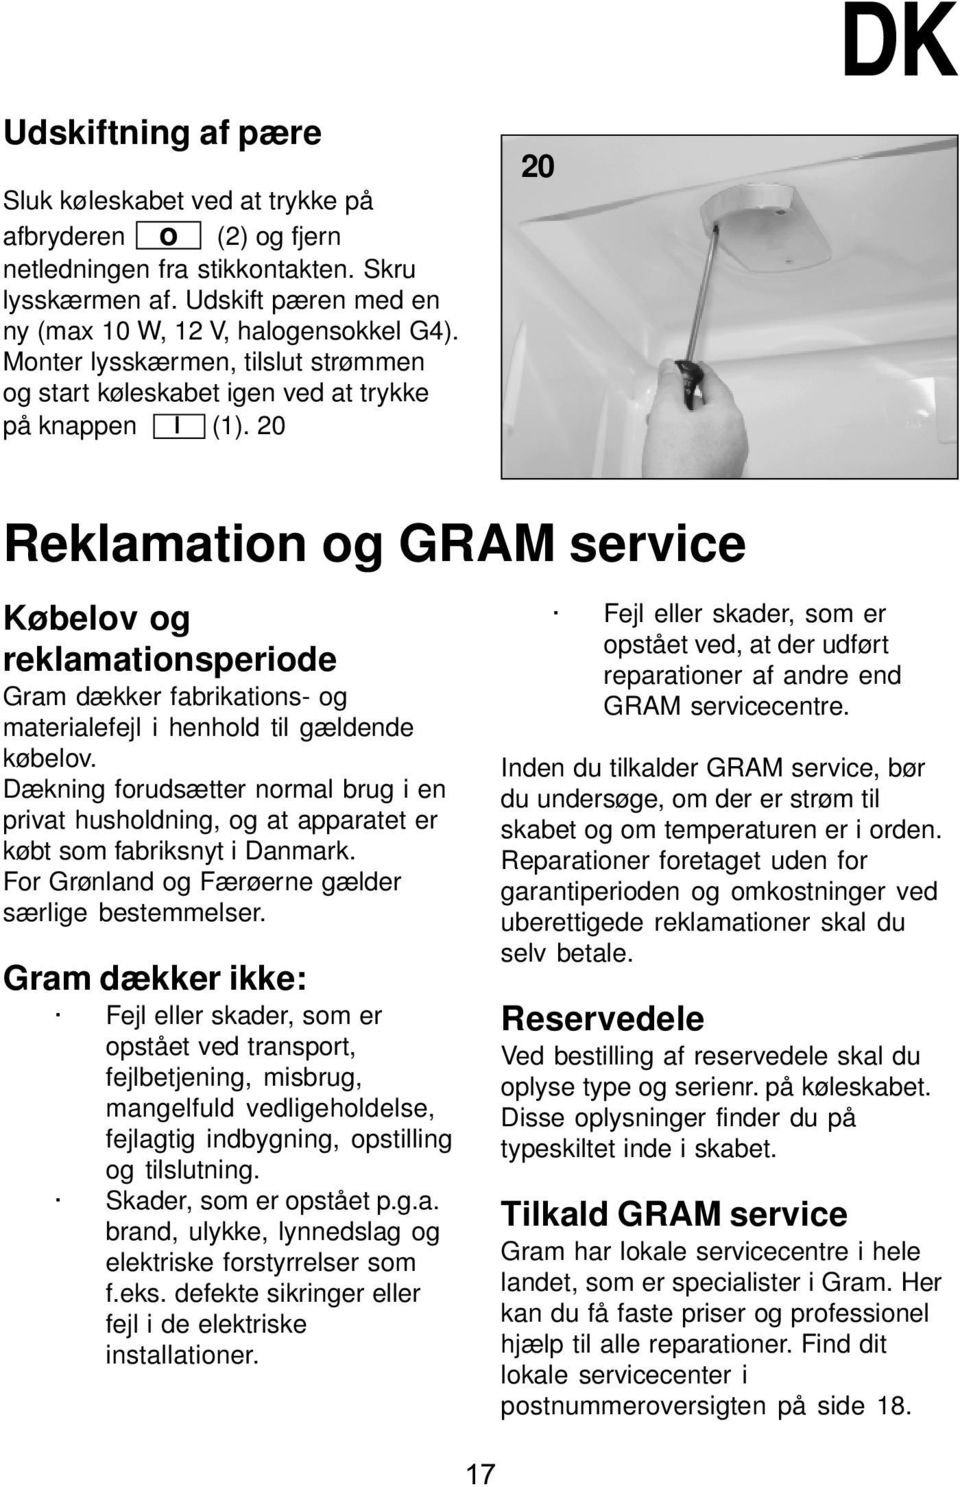 20 20 DK Reklamation og GRAM service Købelov og reklamationsperiode Gram dækker fabrikations- og materialefejl i henhold til gældende købelov.